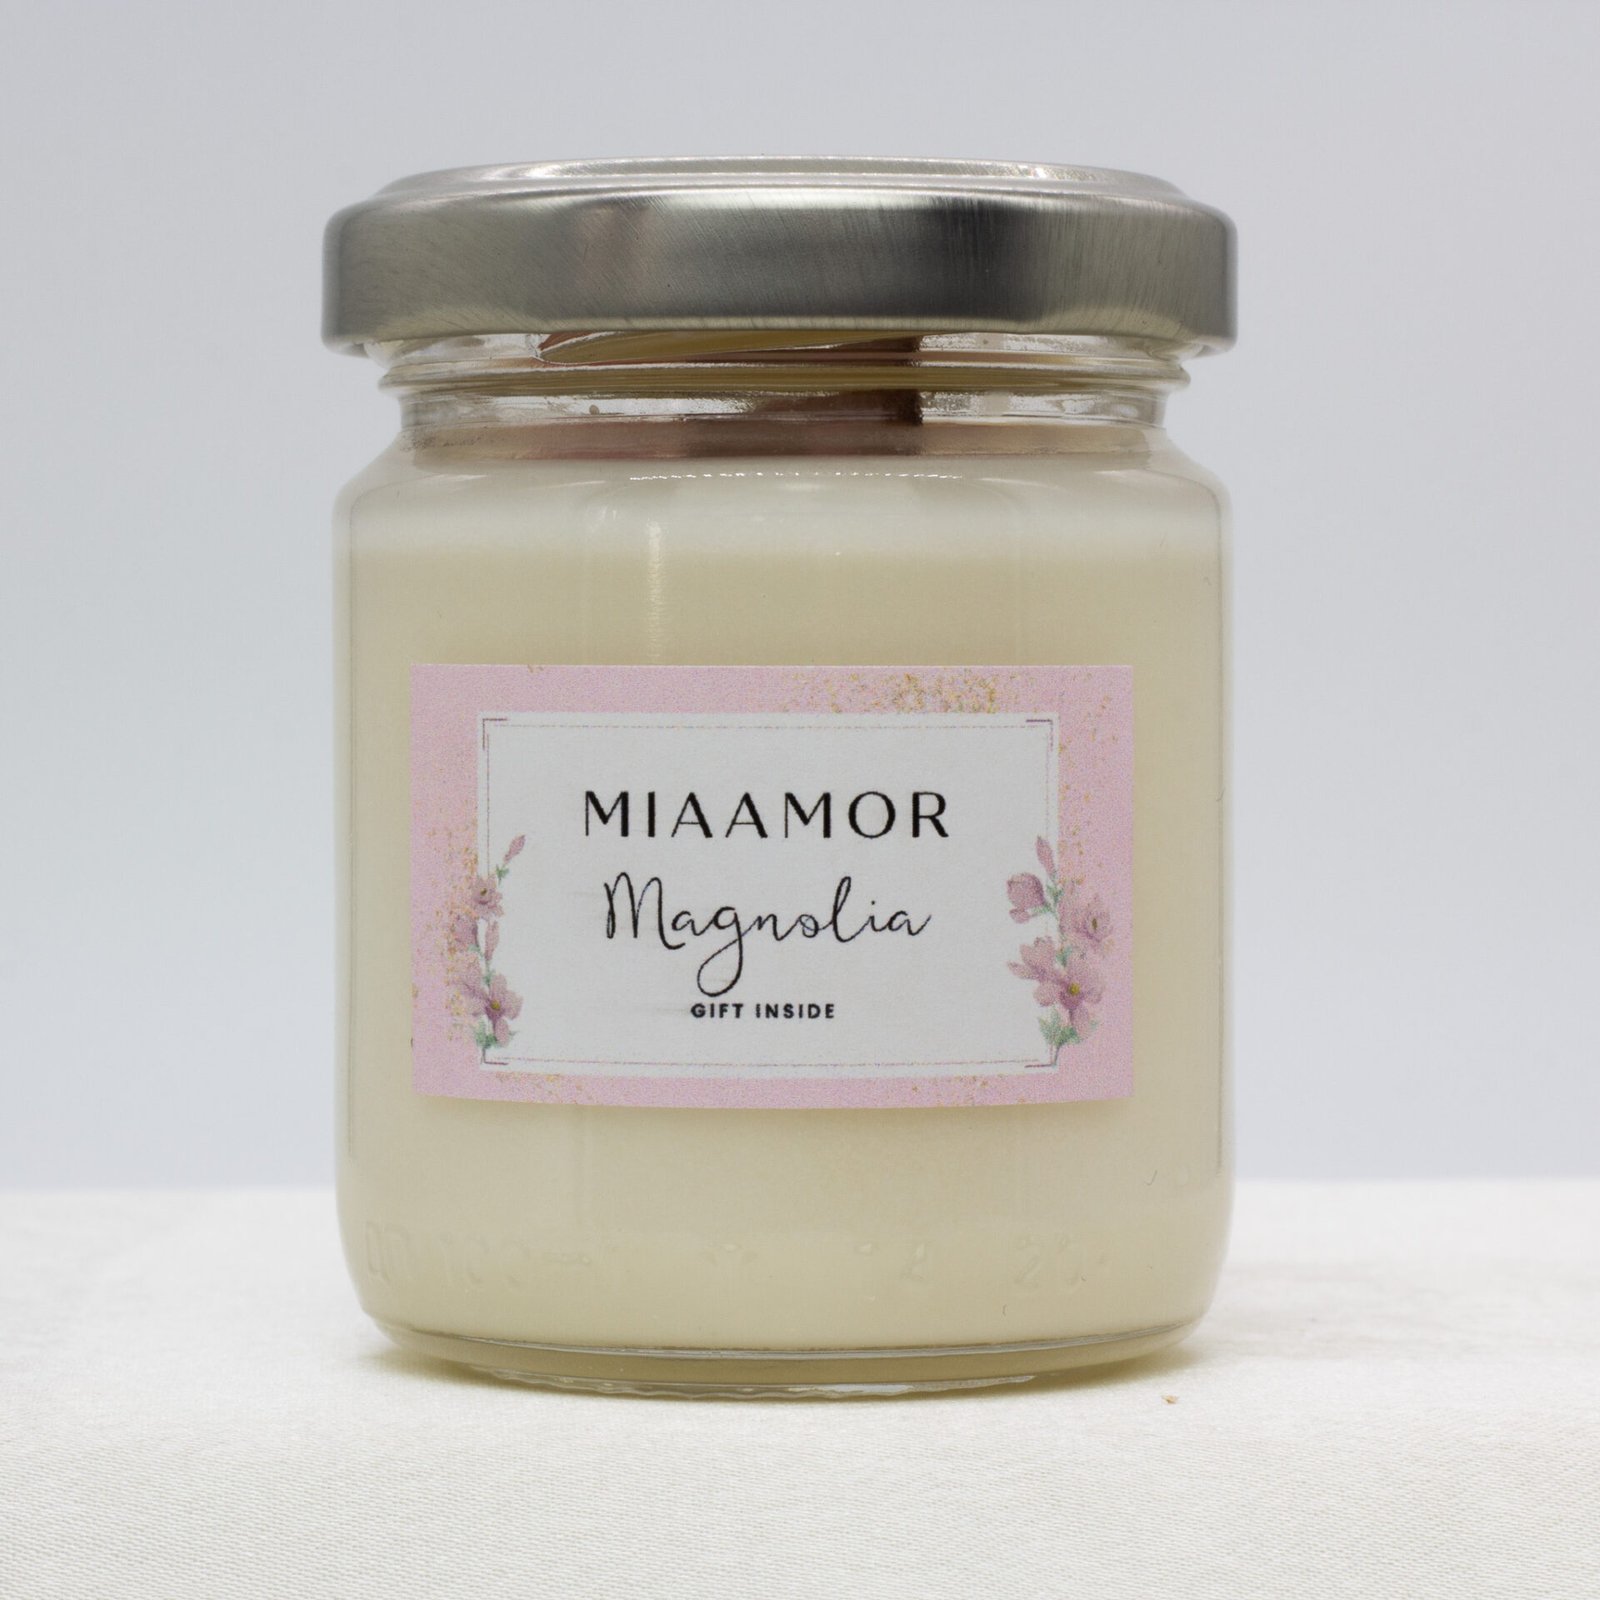 Magnolia candle